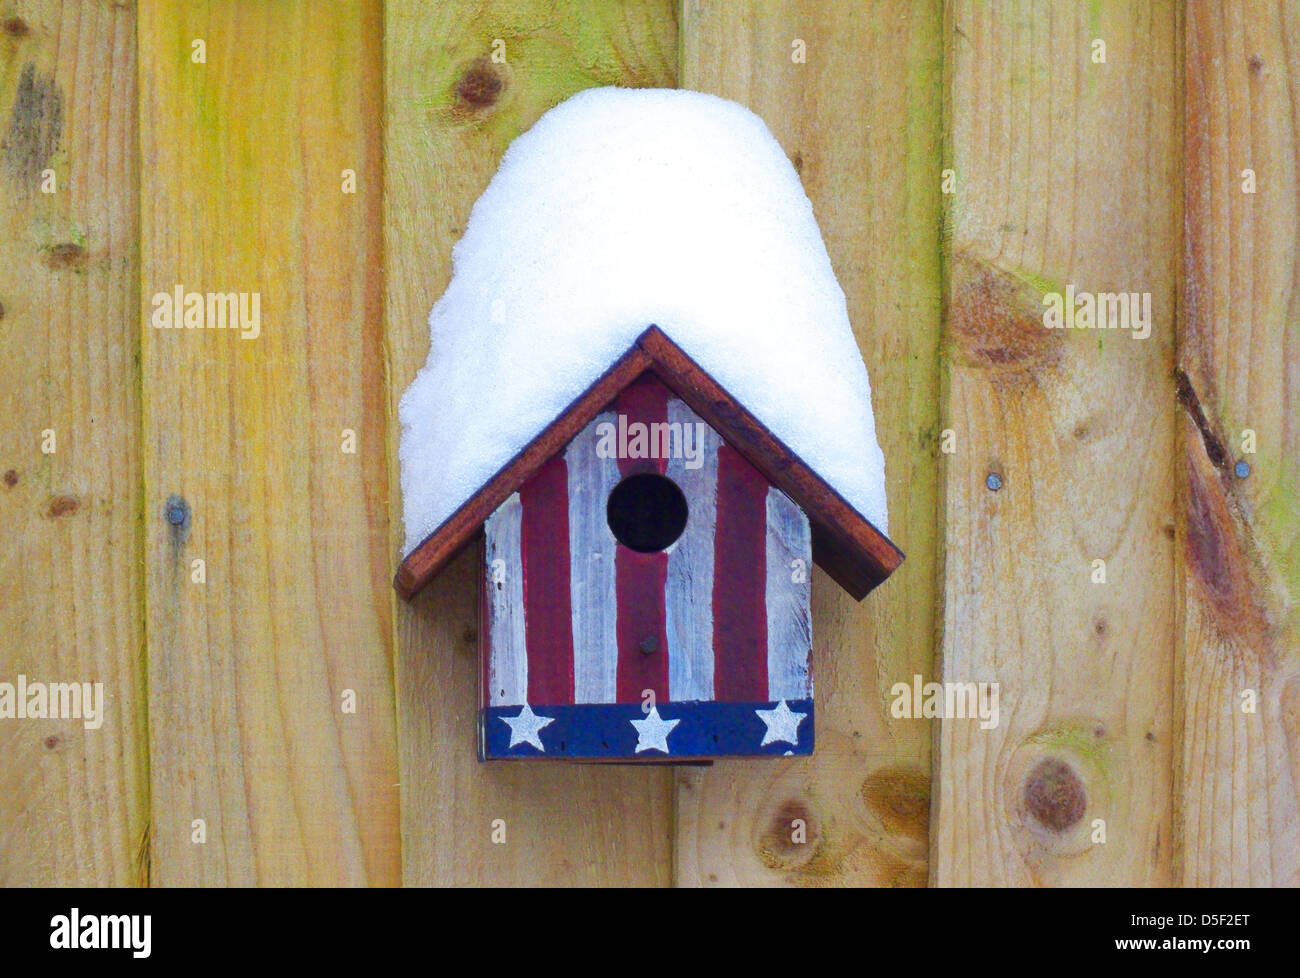 Abdeckung von Schnee auf ein Vogelhaus mit Stars And Stripes lackiert Stockfoto